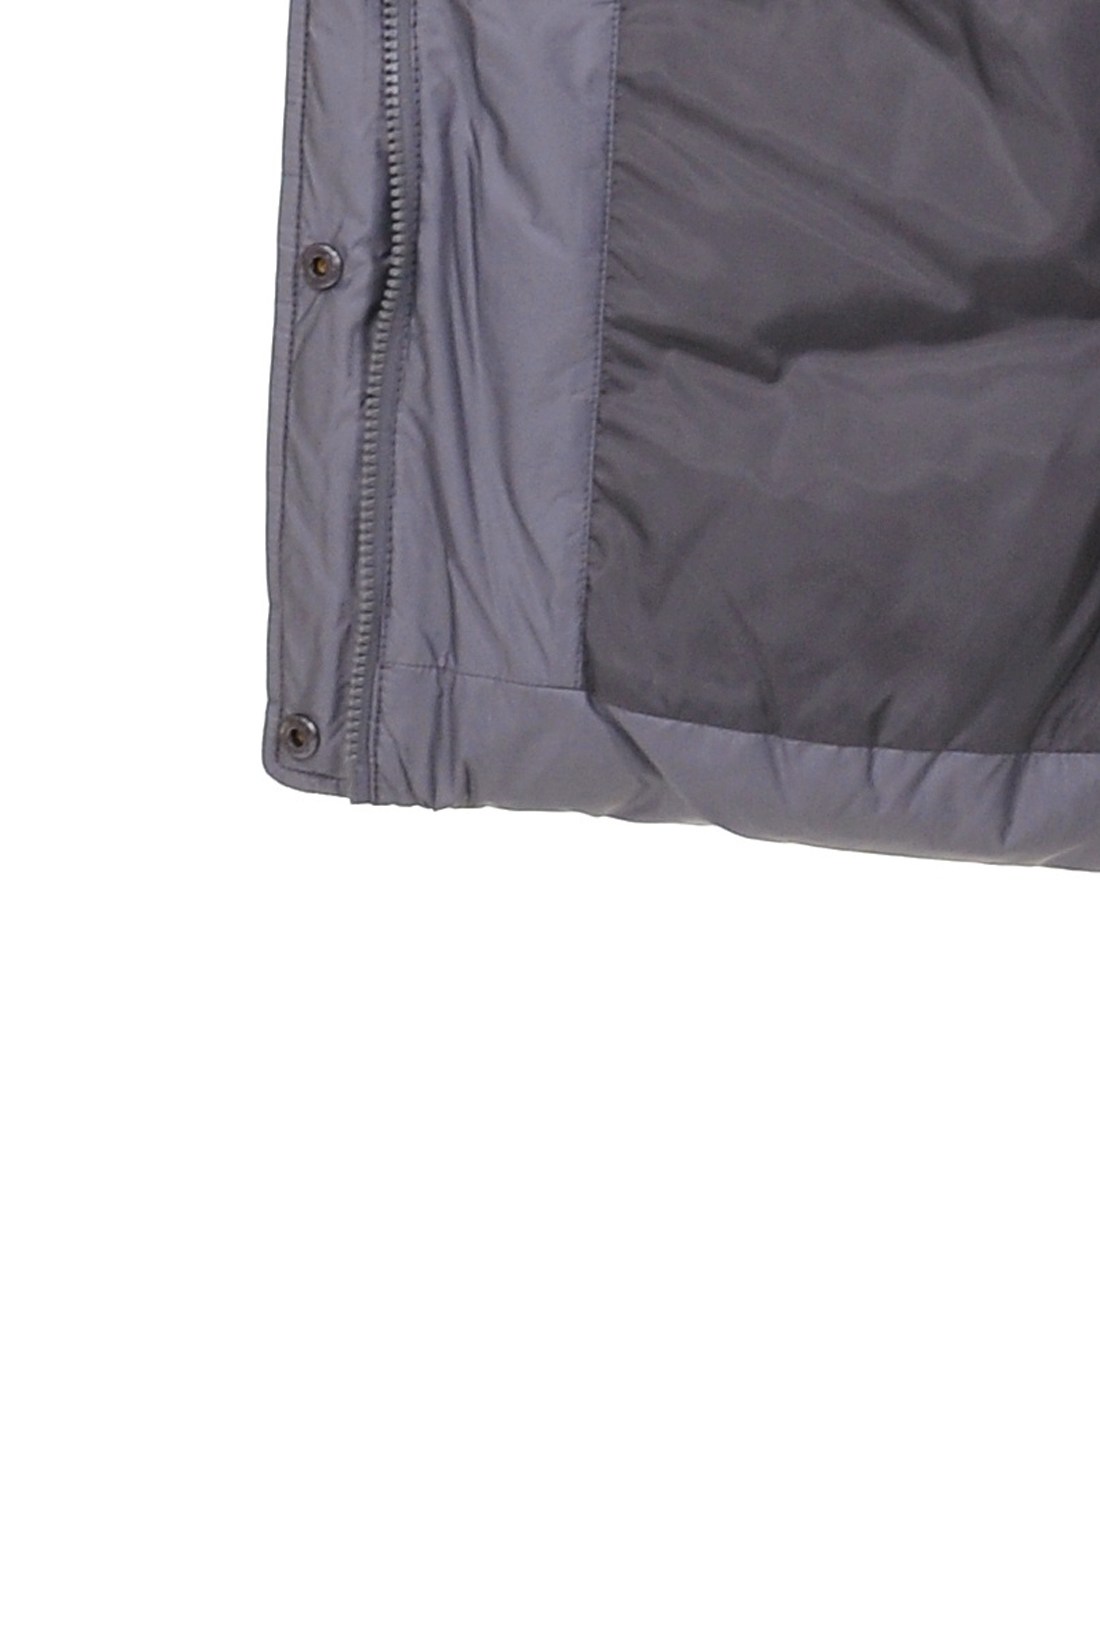 Длинный пуховик с чернобуркой (арт. baon B009552), размер XXL, цвет серый Длинный пуховик с чернобуркой (арт. baon B009552) - фото 3